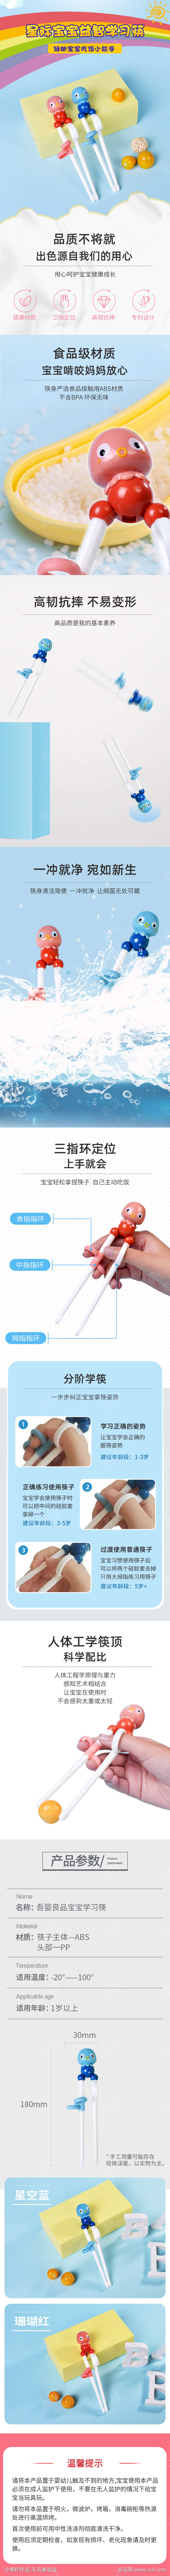 儿童用筷详情页设计淘宝电商详情页